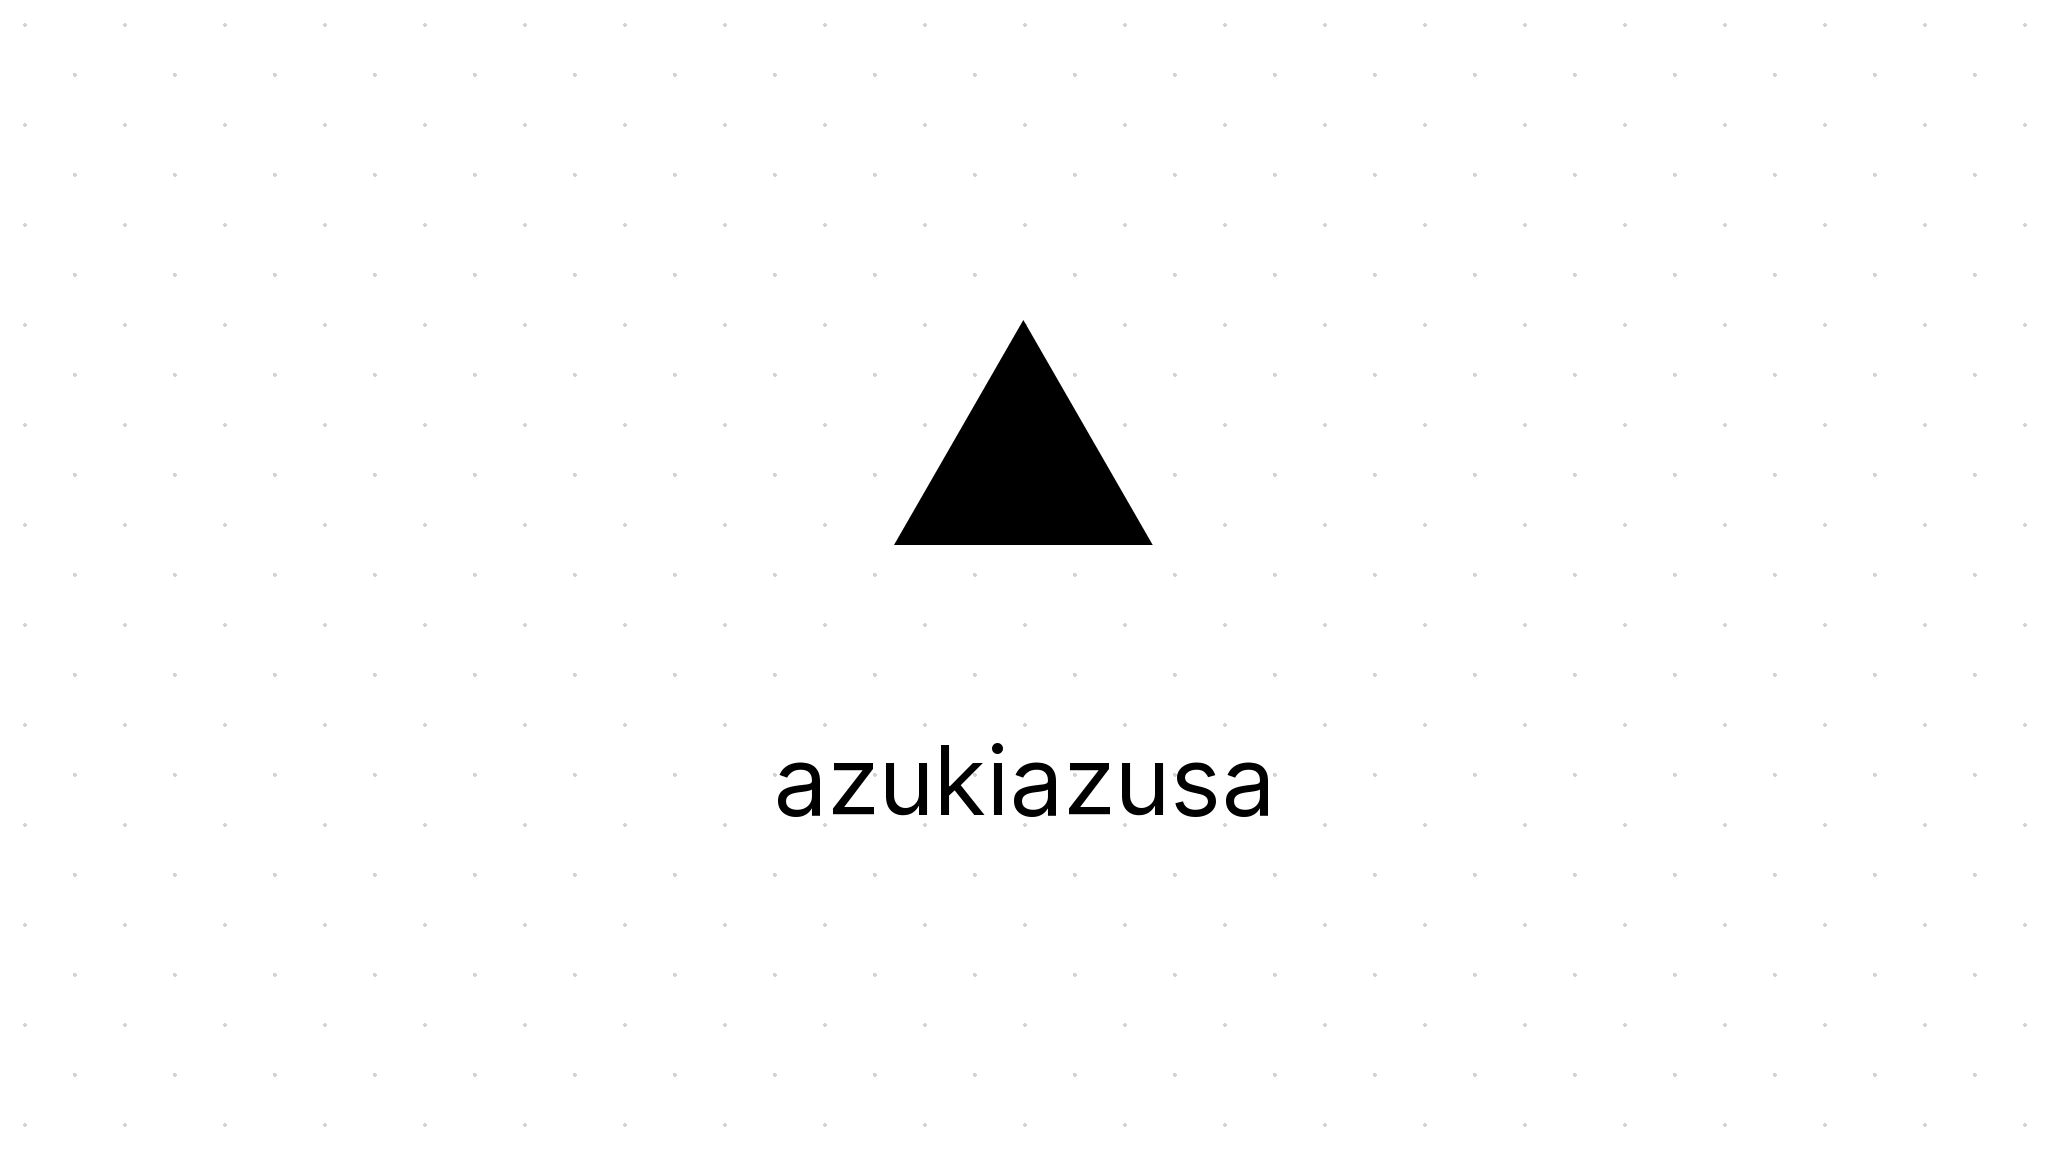 azukiazusa